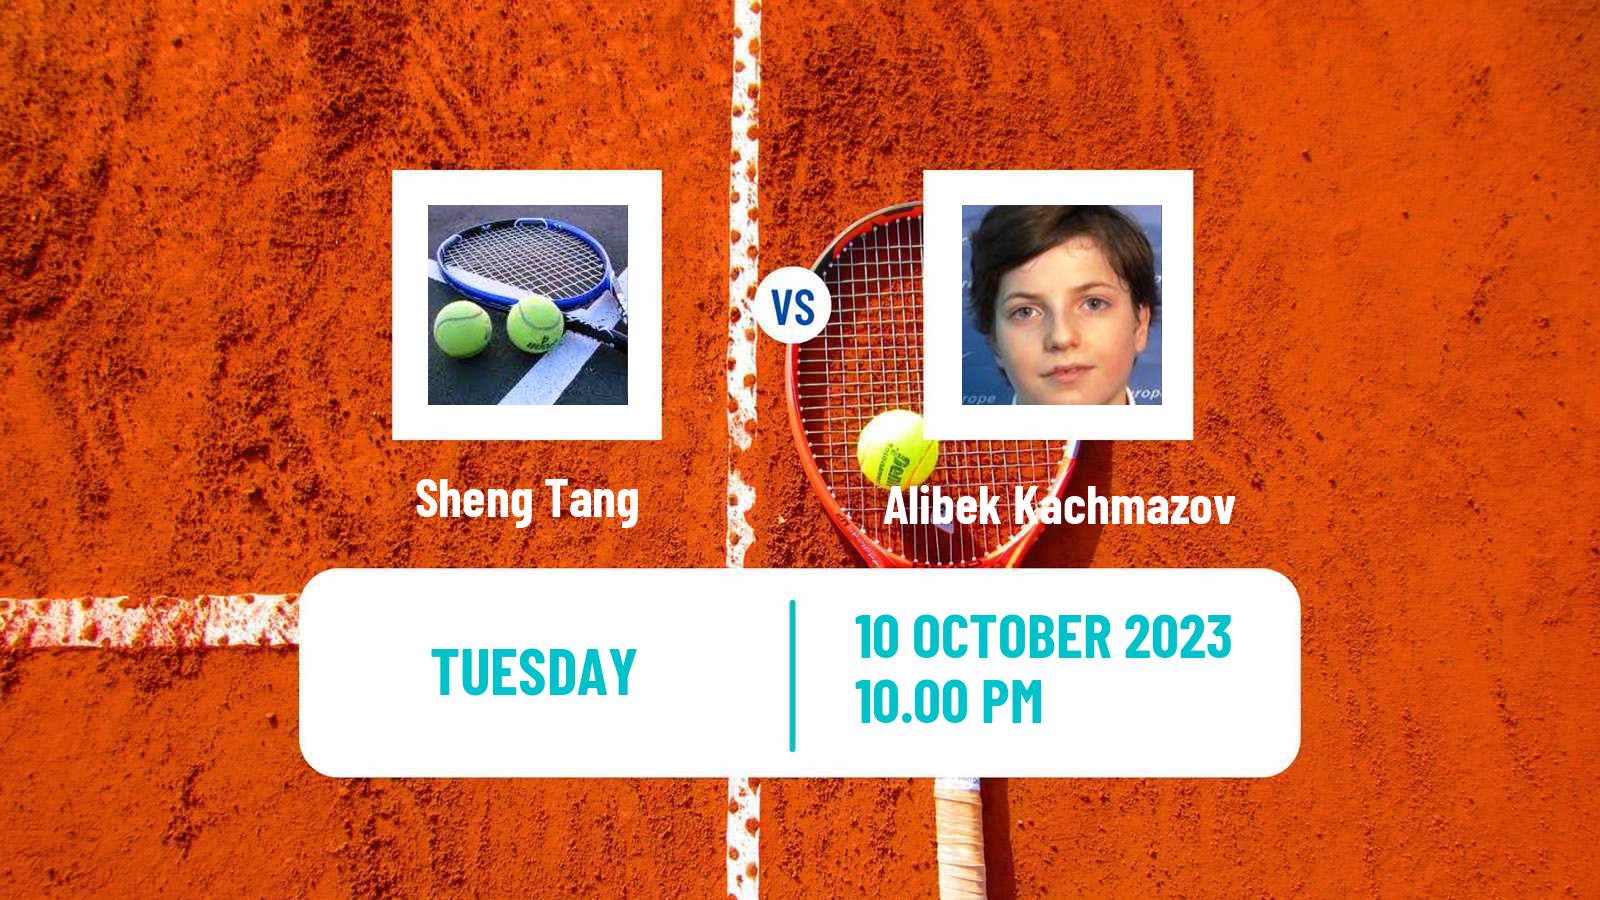 Tennis Shenzhen 2 Challenger Men Sheng Tang - Alibek Kachmazov